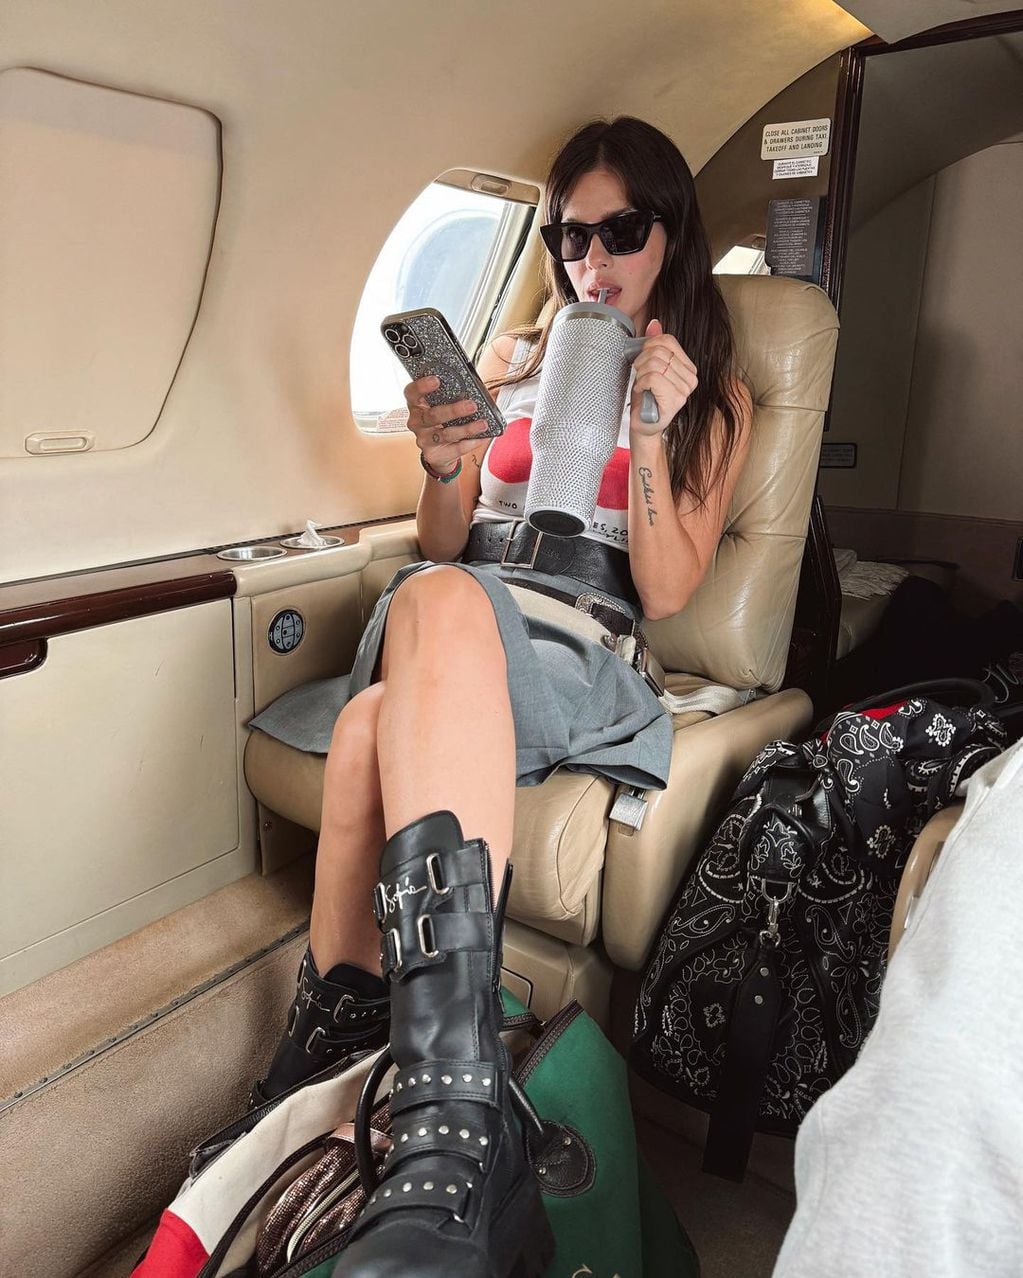 La China Suárez posó para Instagram desde un avión privado y la compararon con Wanda Nara